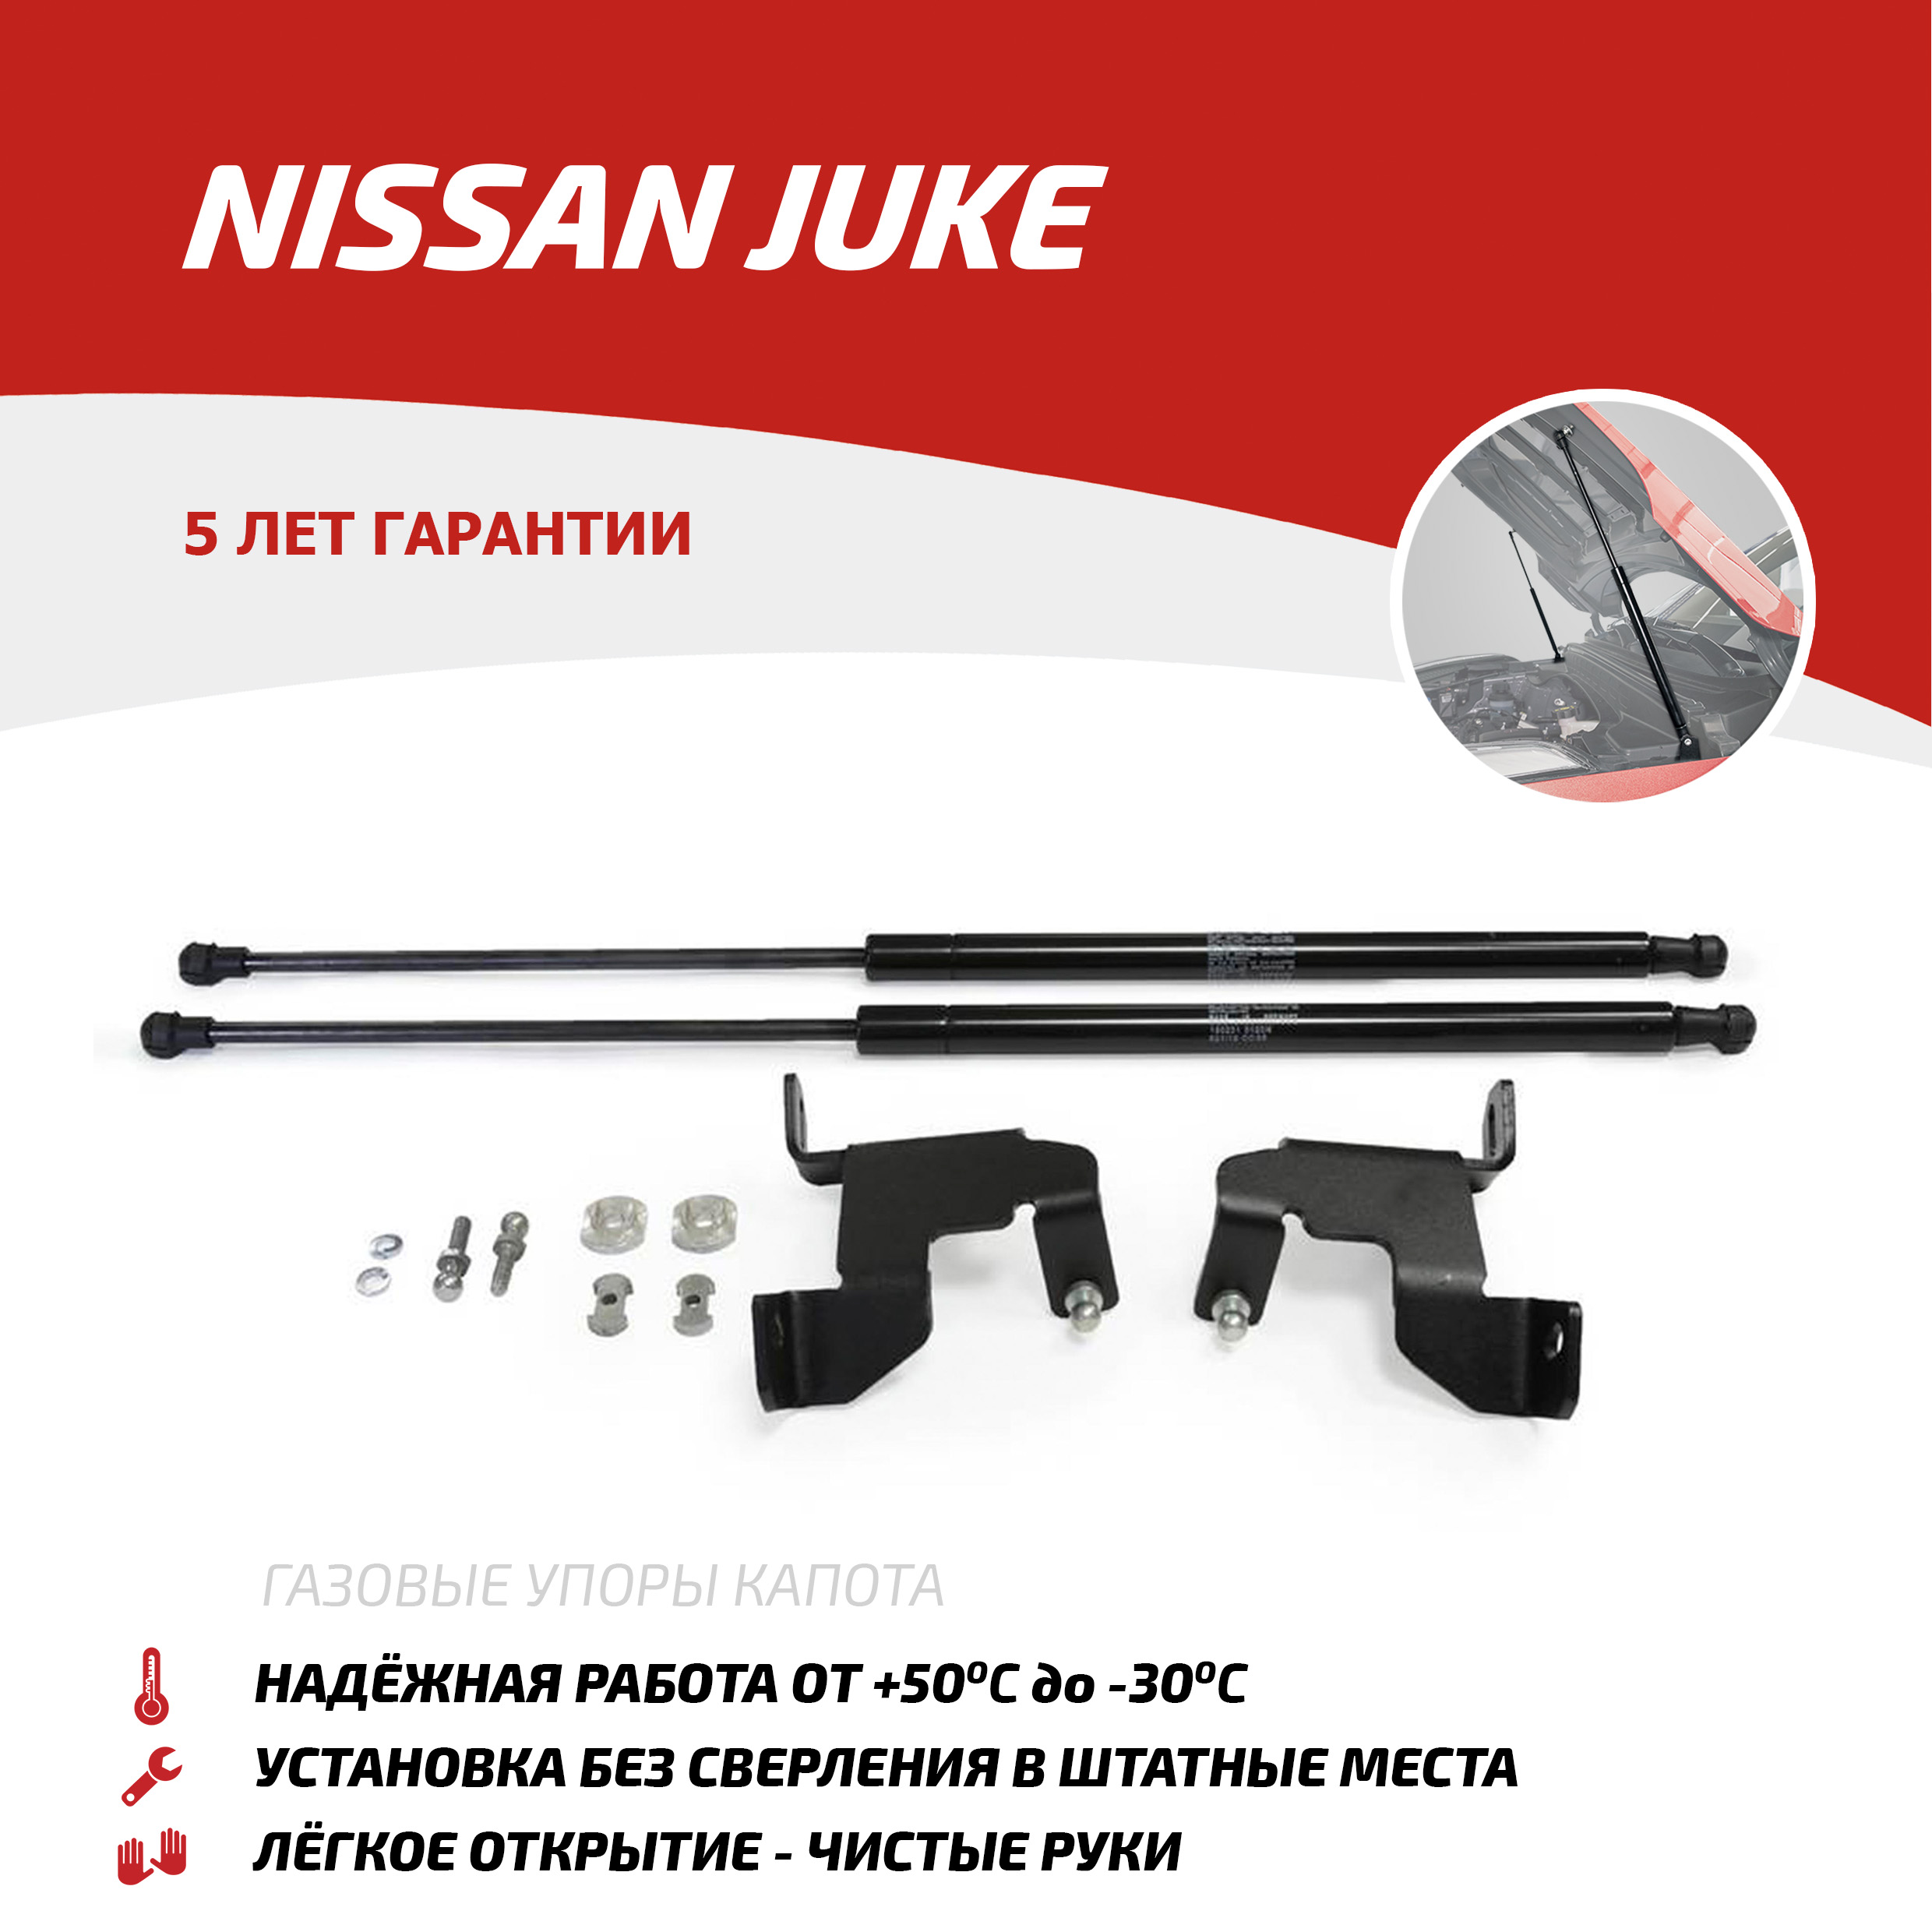 Газовые упоры капота АвтоУпор для Nissan Juke I 2010-2019, 2 шт., UNIJUK012